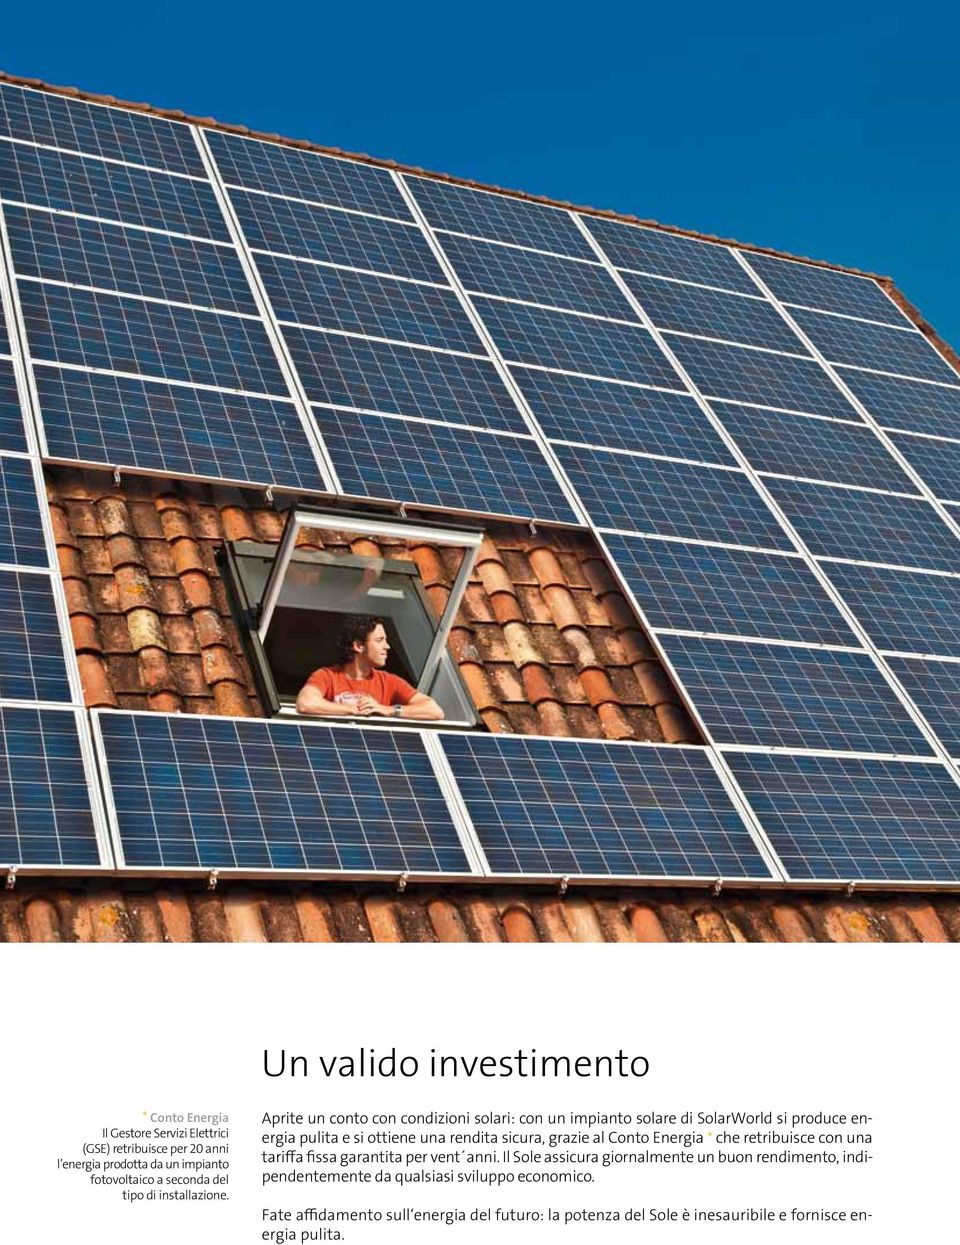 Aprite un conto con condizioni solari: con un impianto solare di SolarWorld si produce energia pulita e si ottiene una rendita sicura, grazie al Conto